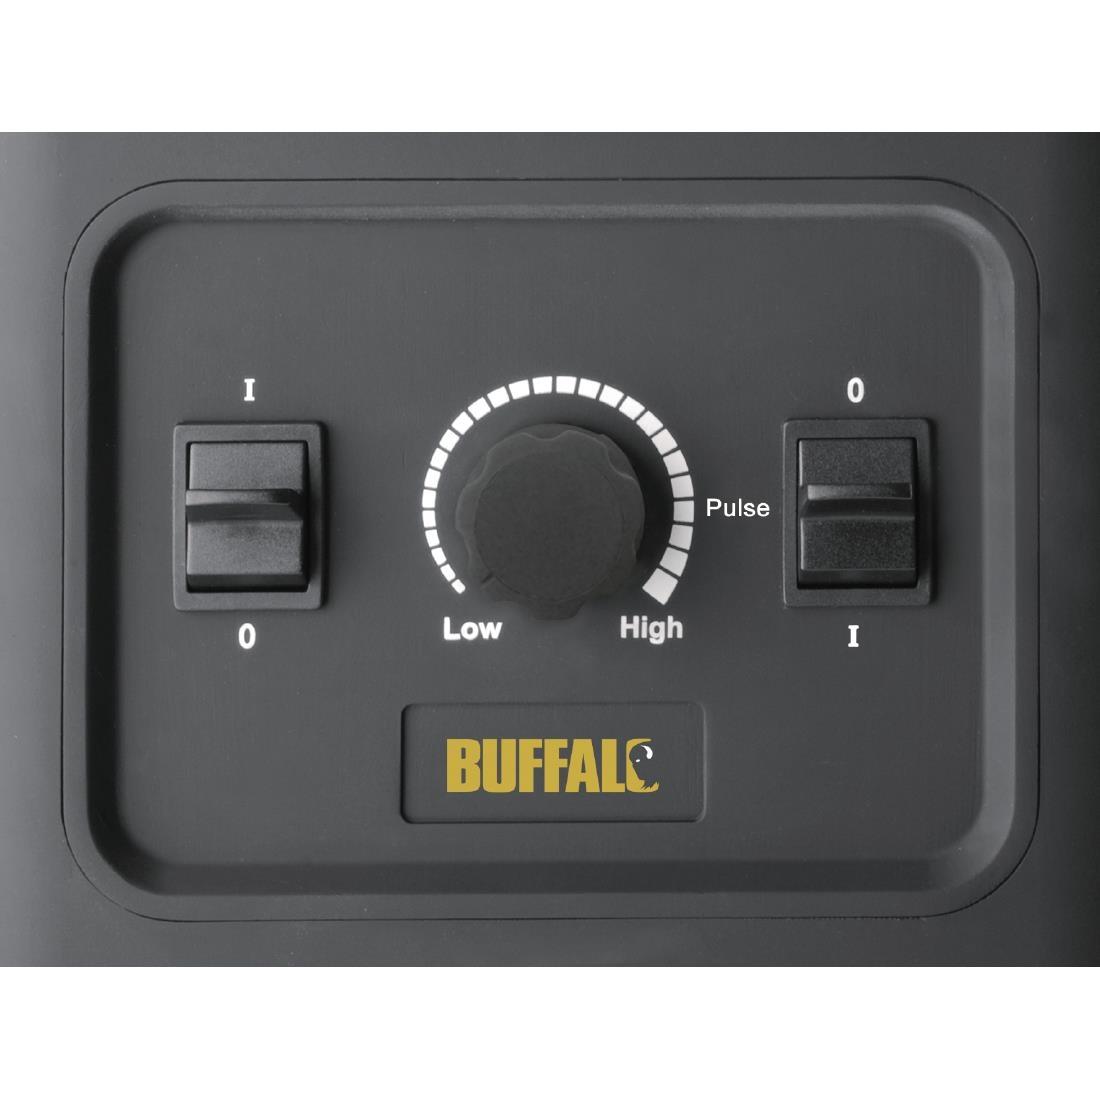 Buffalo Bar Blender 2.5Ltr - CR836  - 3